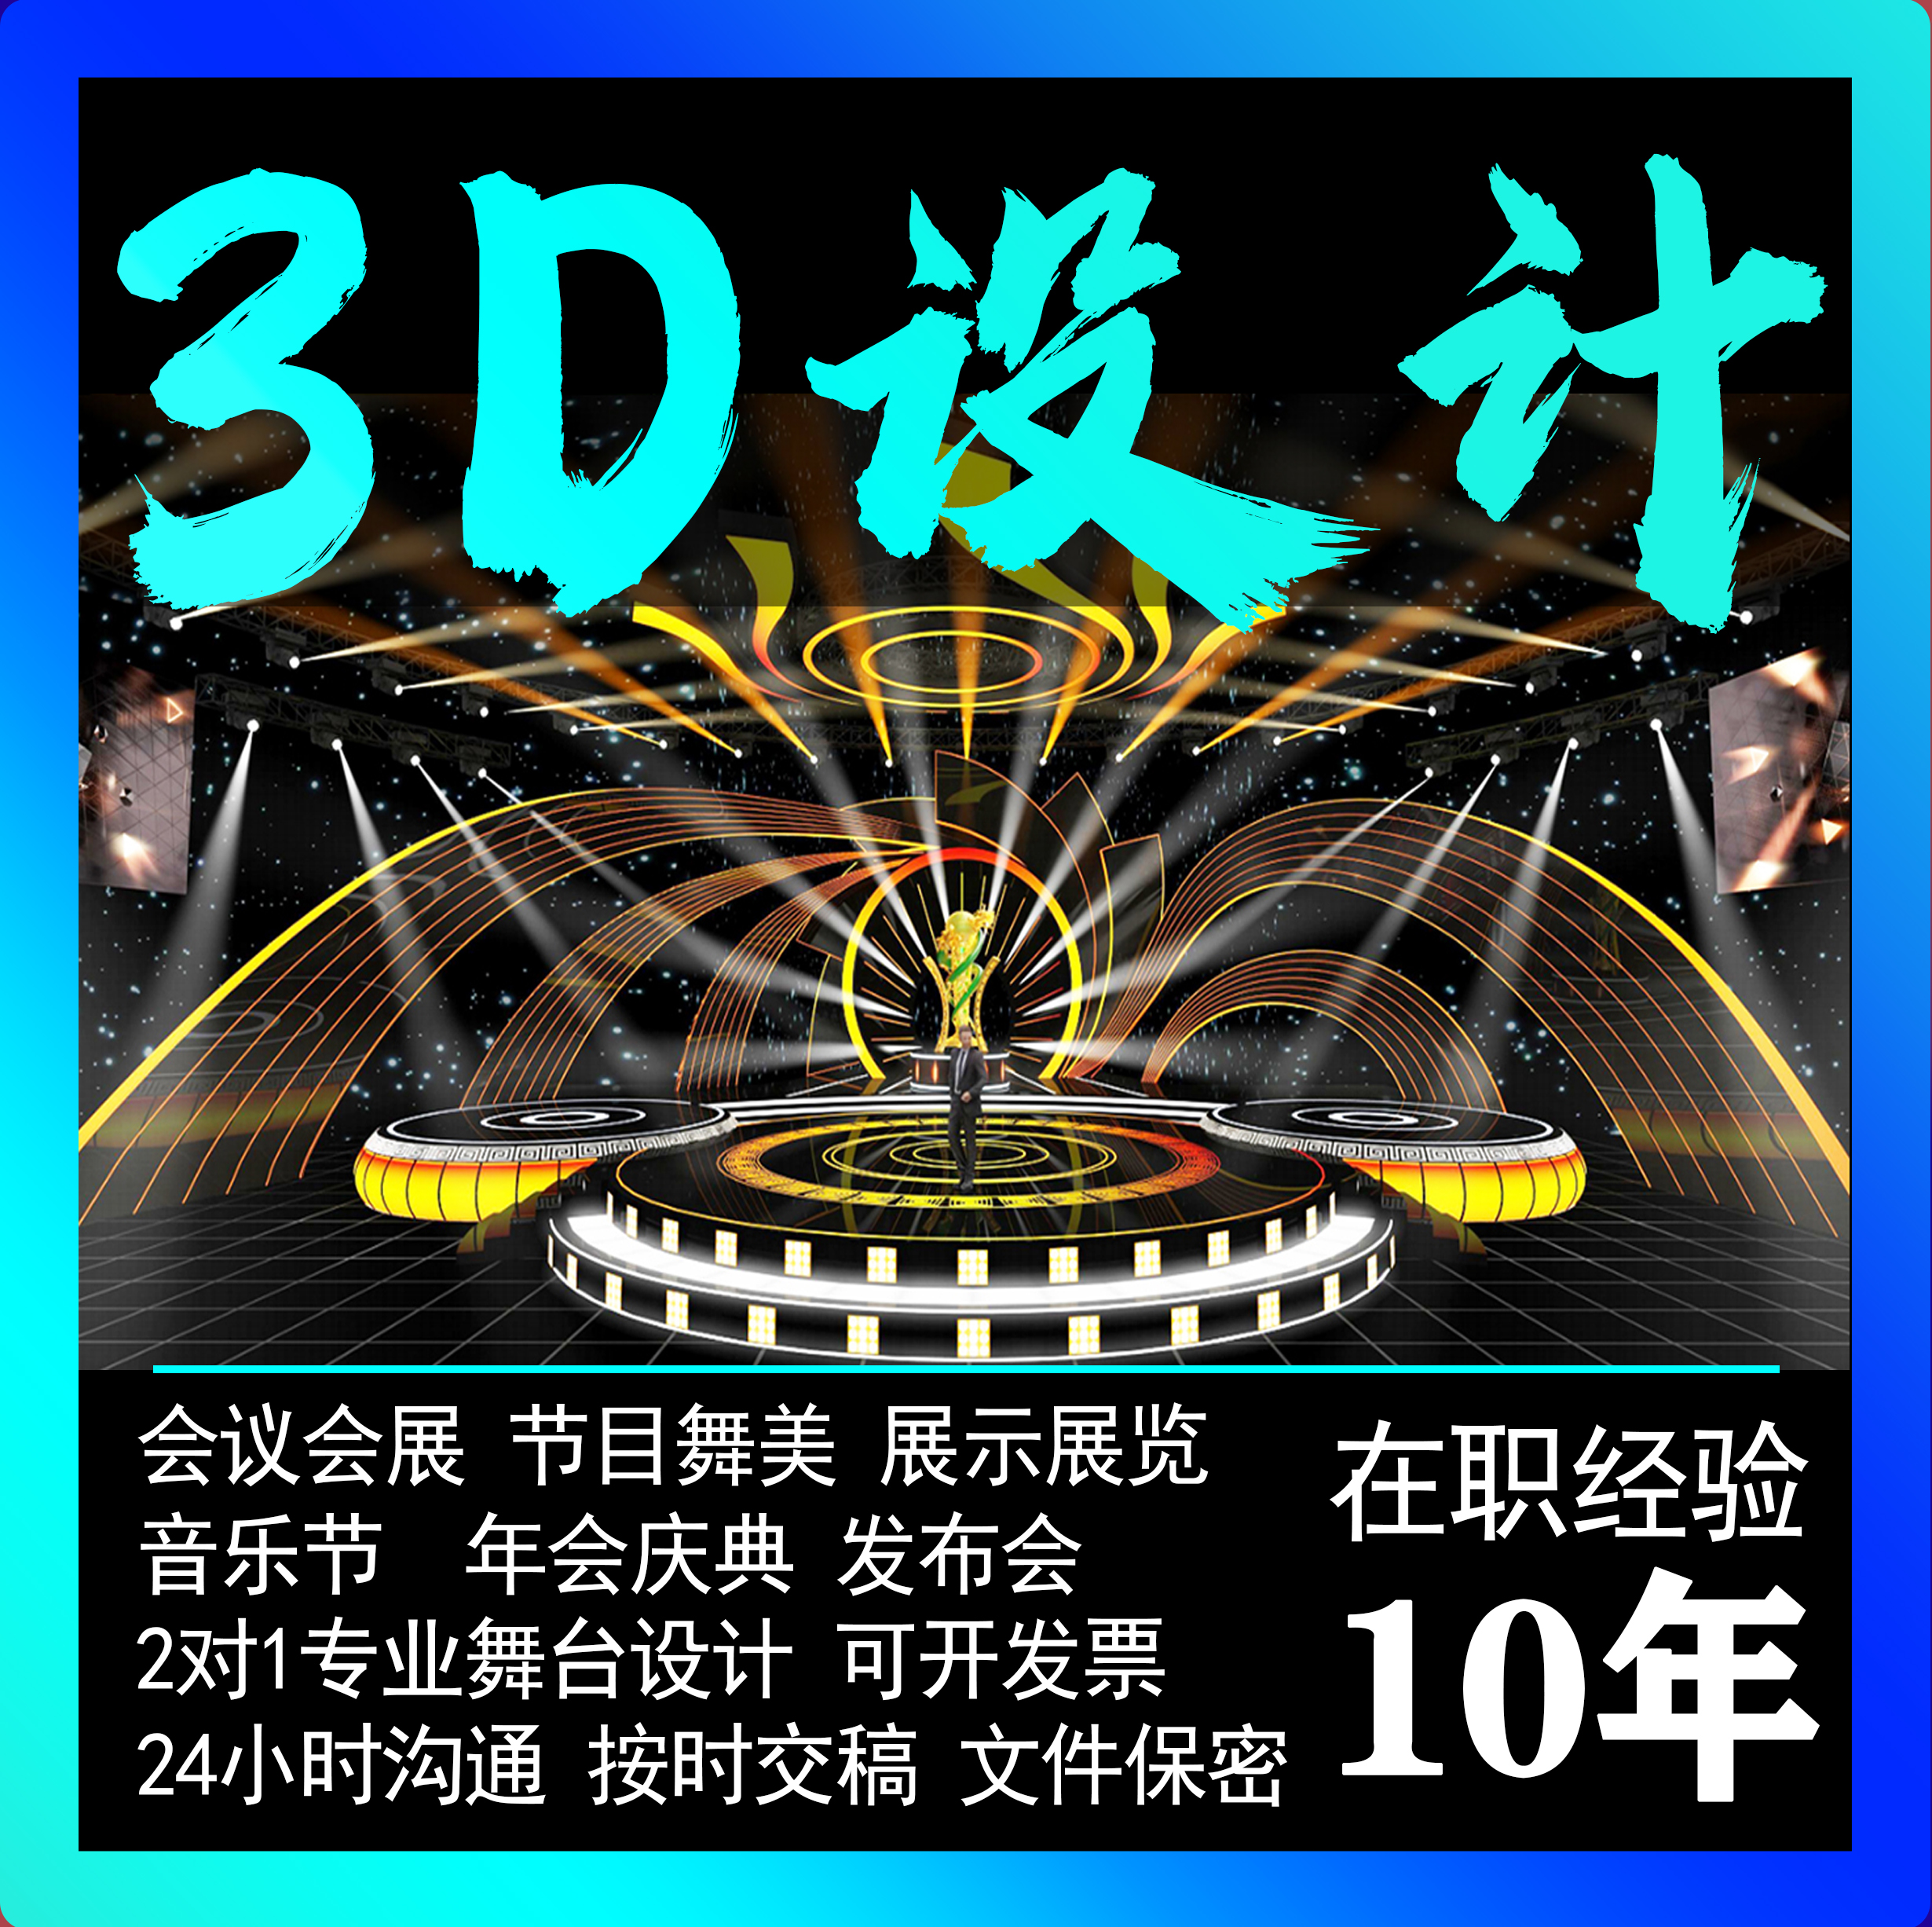 3D效果图制作展厅美陈dp展会展台代做路演活动舞美展位快闪店设计